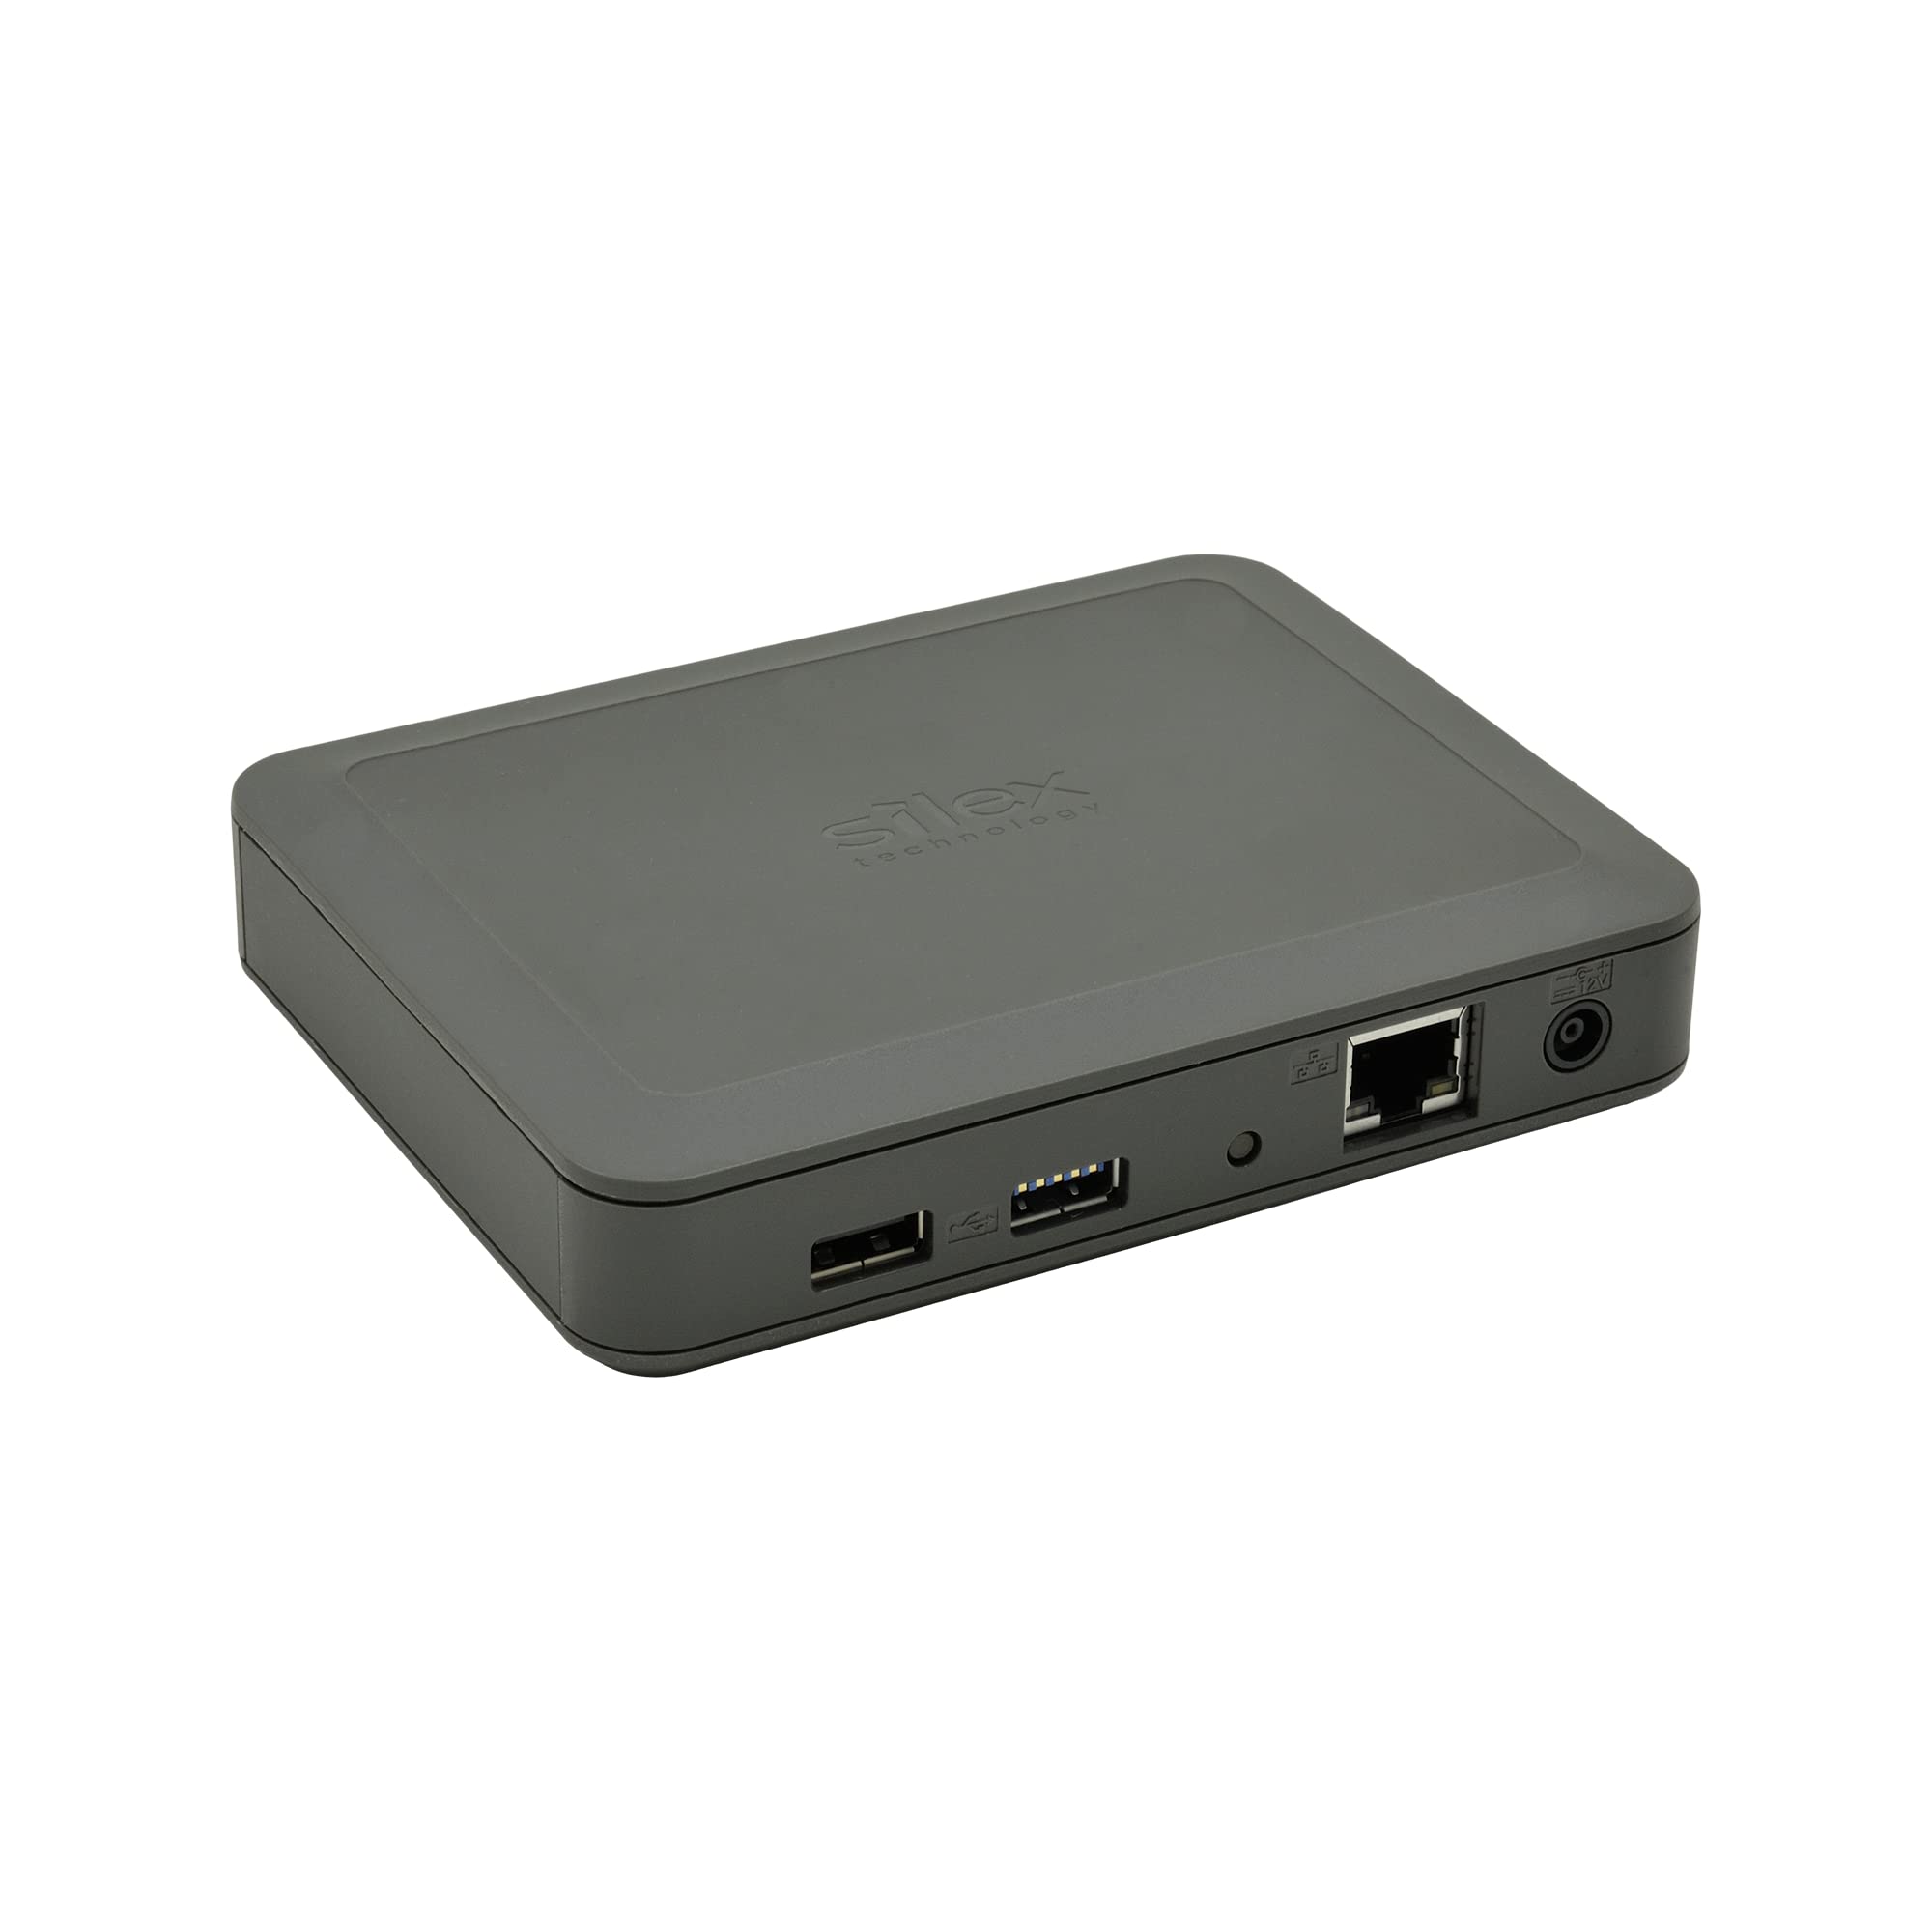 Silex Technology DS-600 USB 3.0 Device Server - Netzwerk USB-Server LAN (10/100/1000 MBit/s), USB 3.2 Gen 1 (USB 3.0), USB 2.0 - Hoher Datendurchsatz Plus Sicherheit im Netzwerk